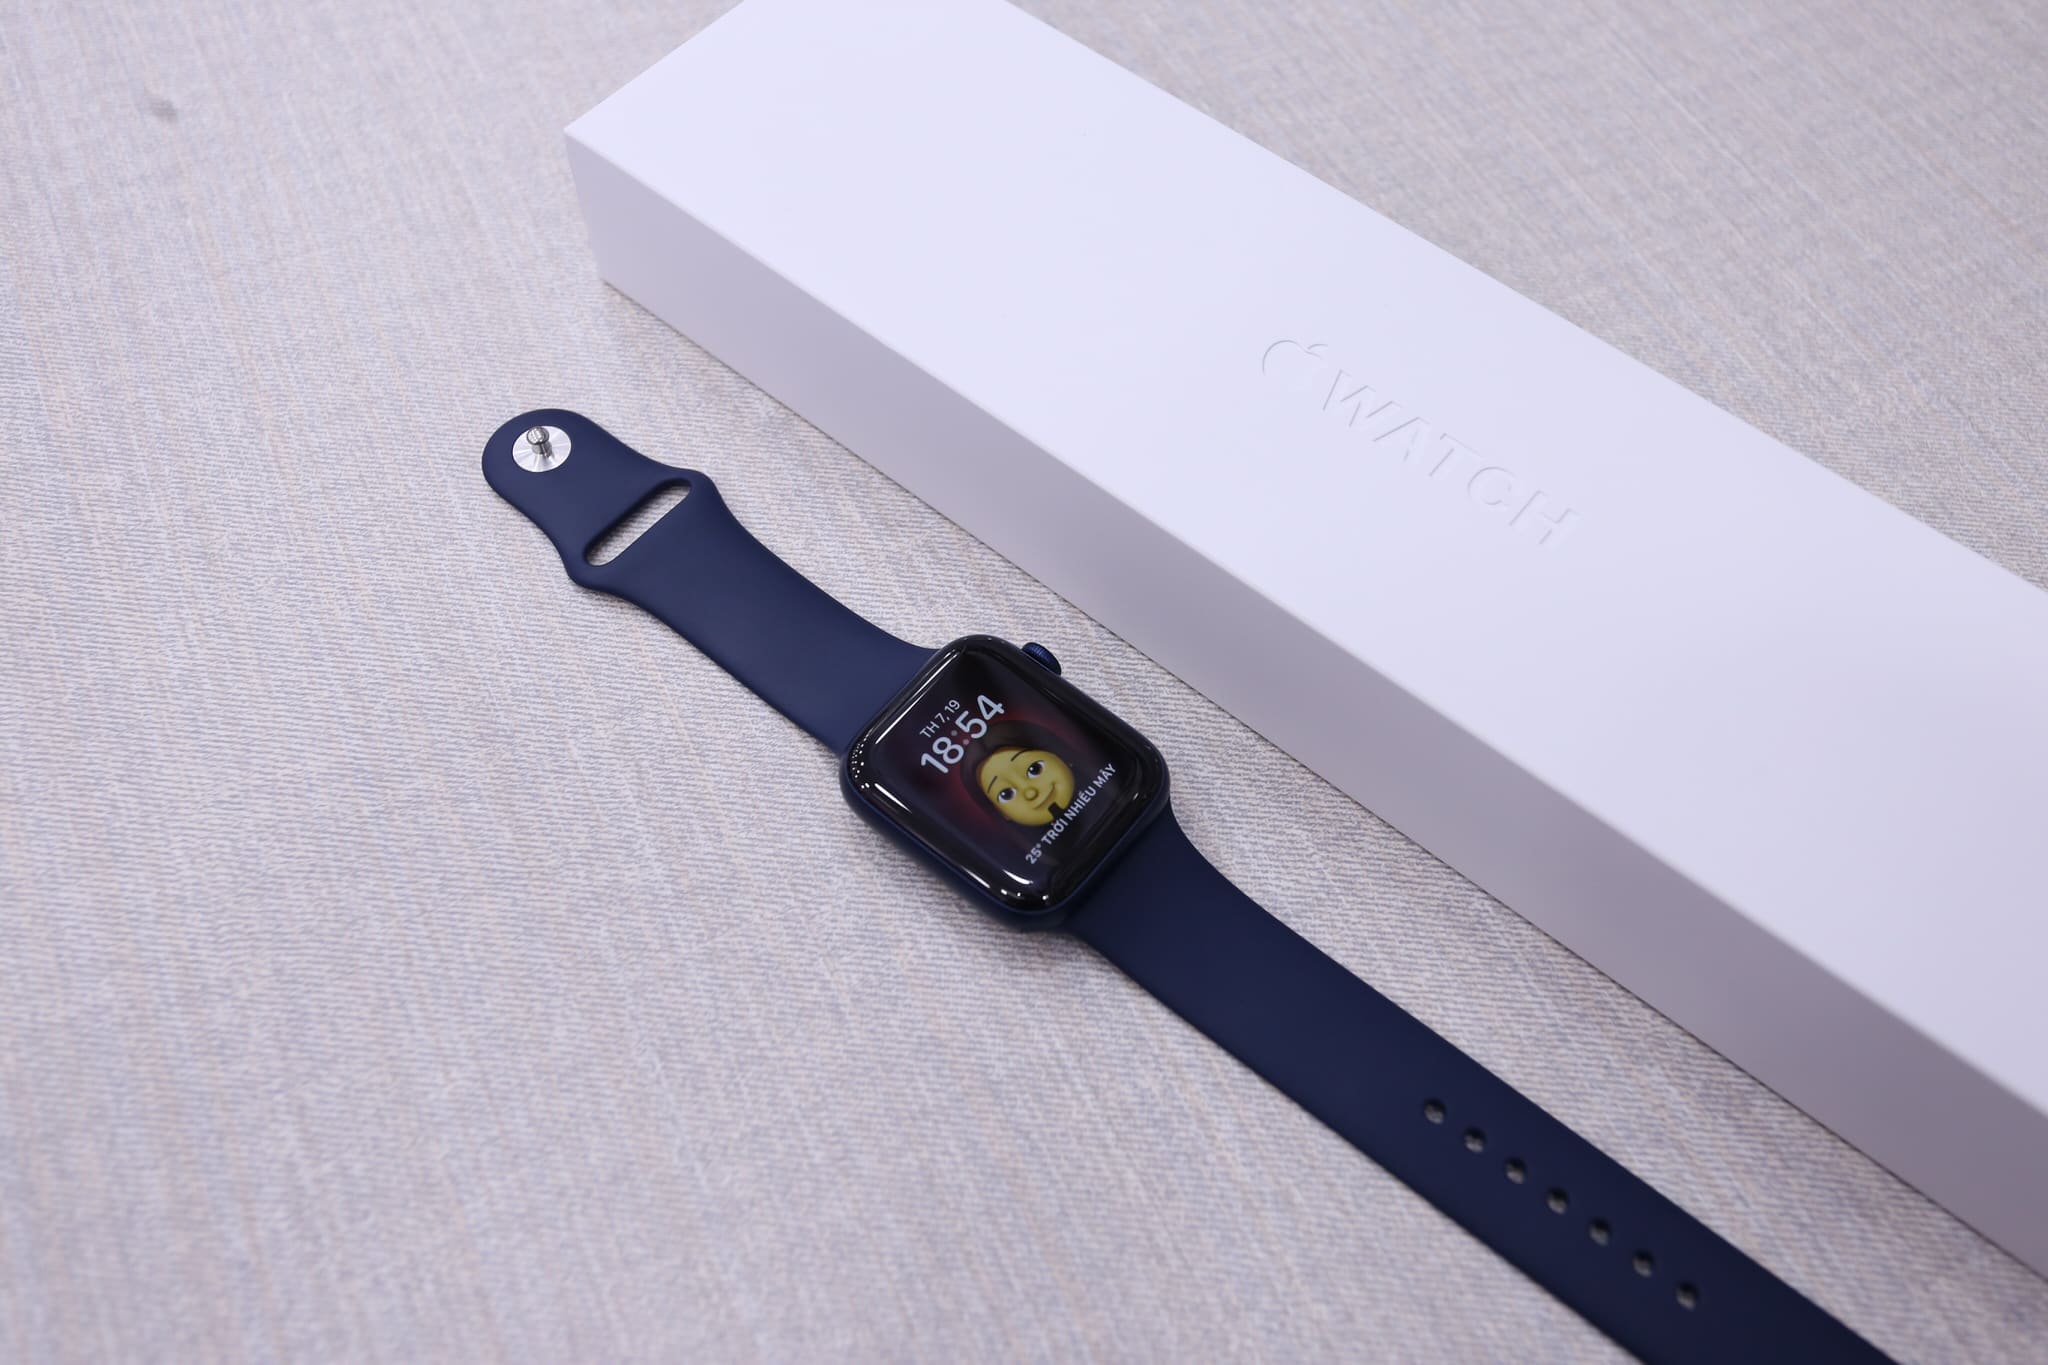 Trên tay Apple Watch Series 6 và Apple Watch SE tại Việt Nam, giá ban đầu từ 9.1 triệu